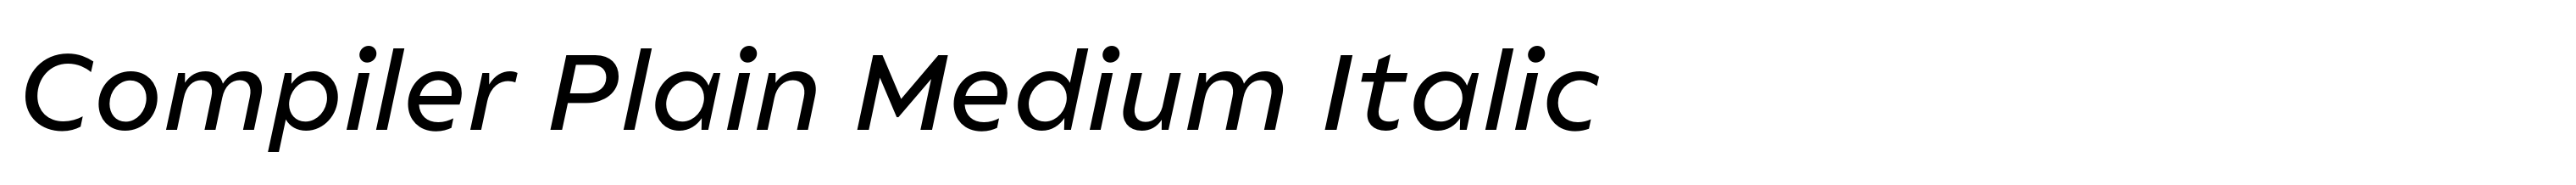 Compiler Plain Medium Italic